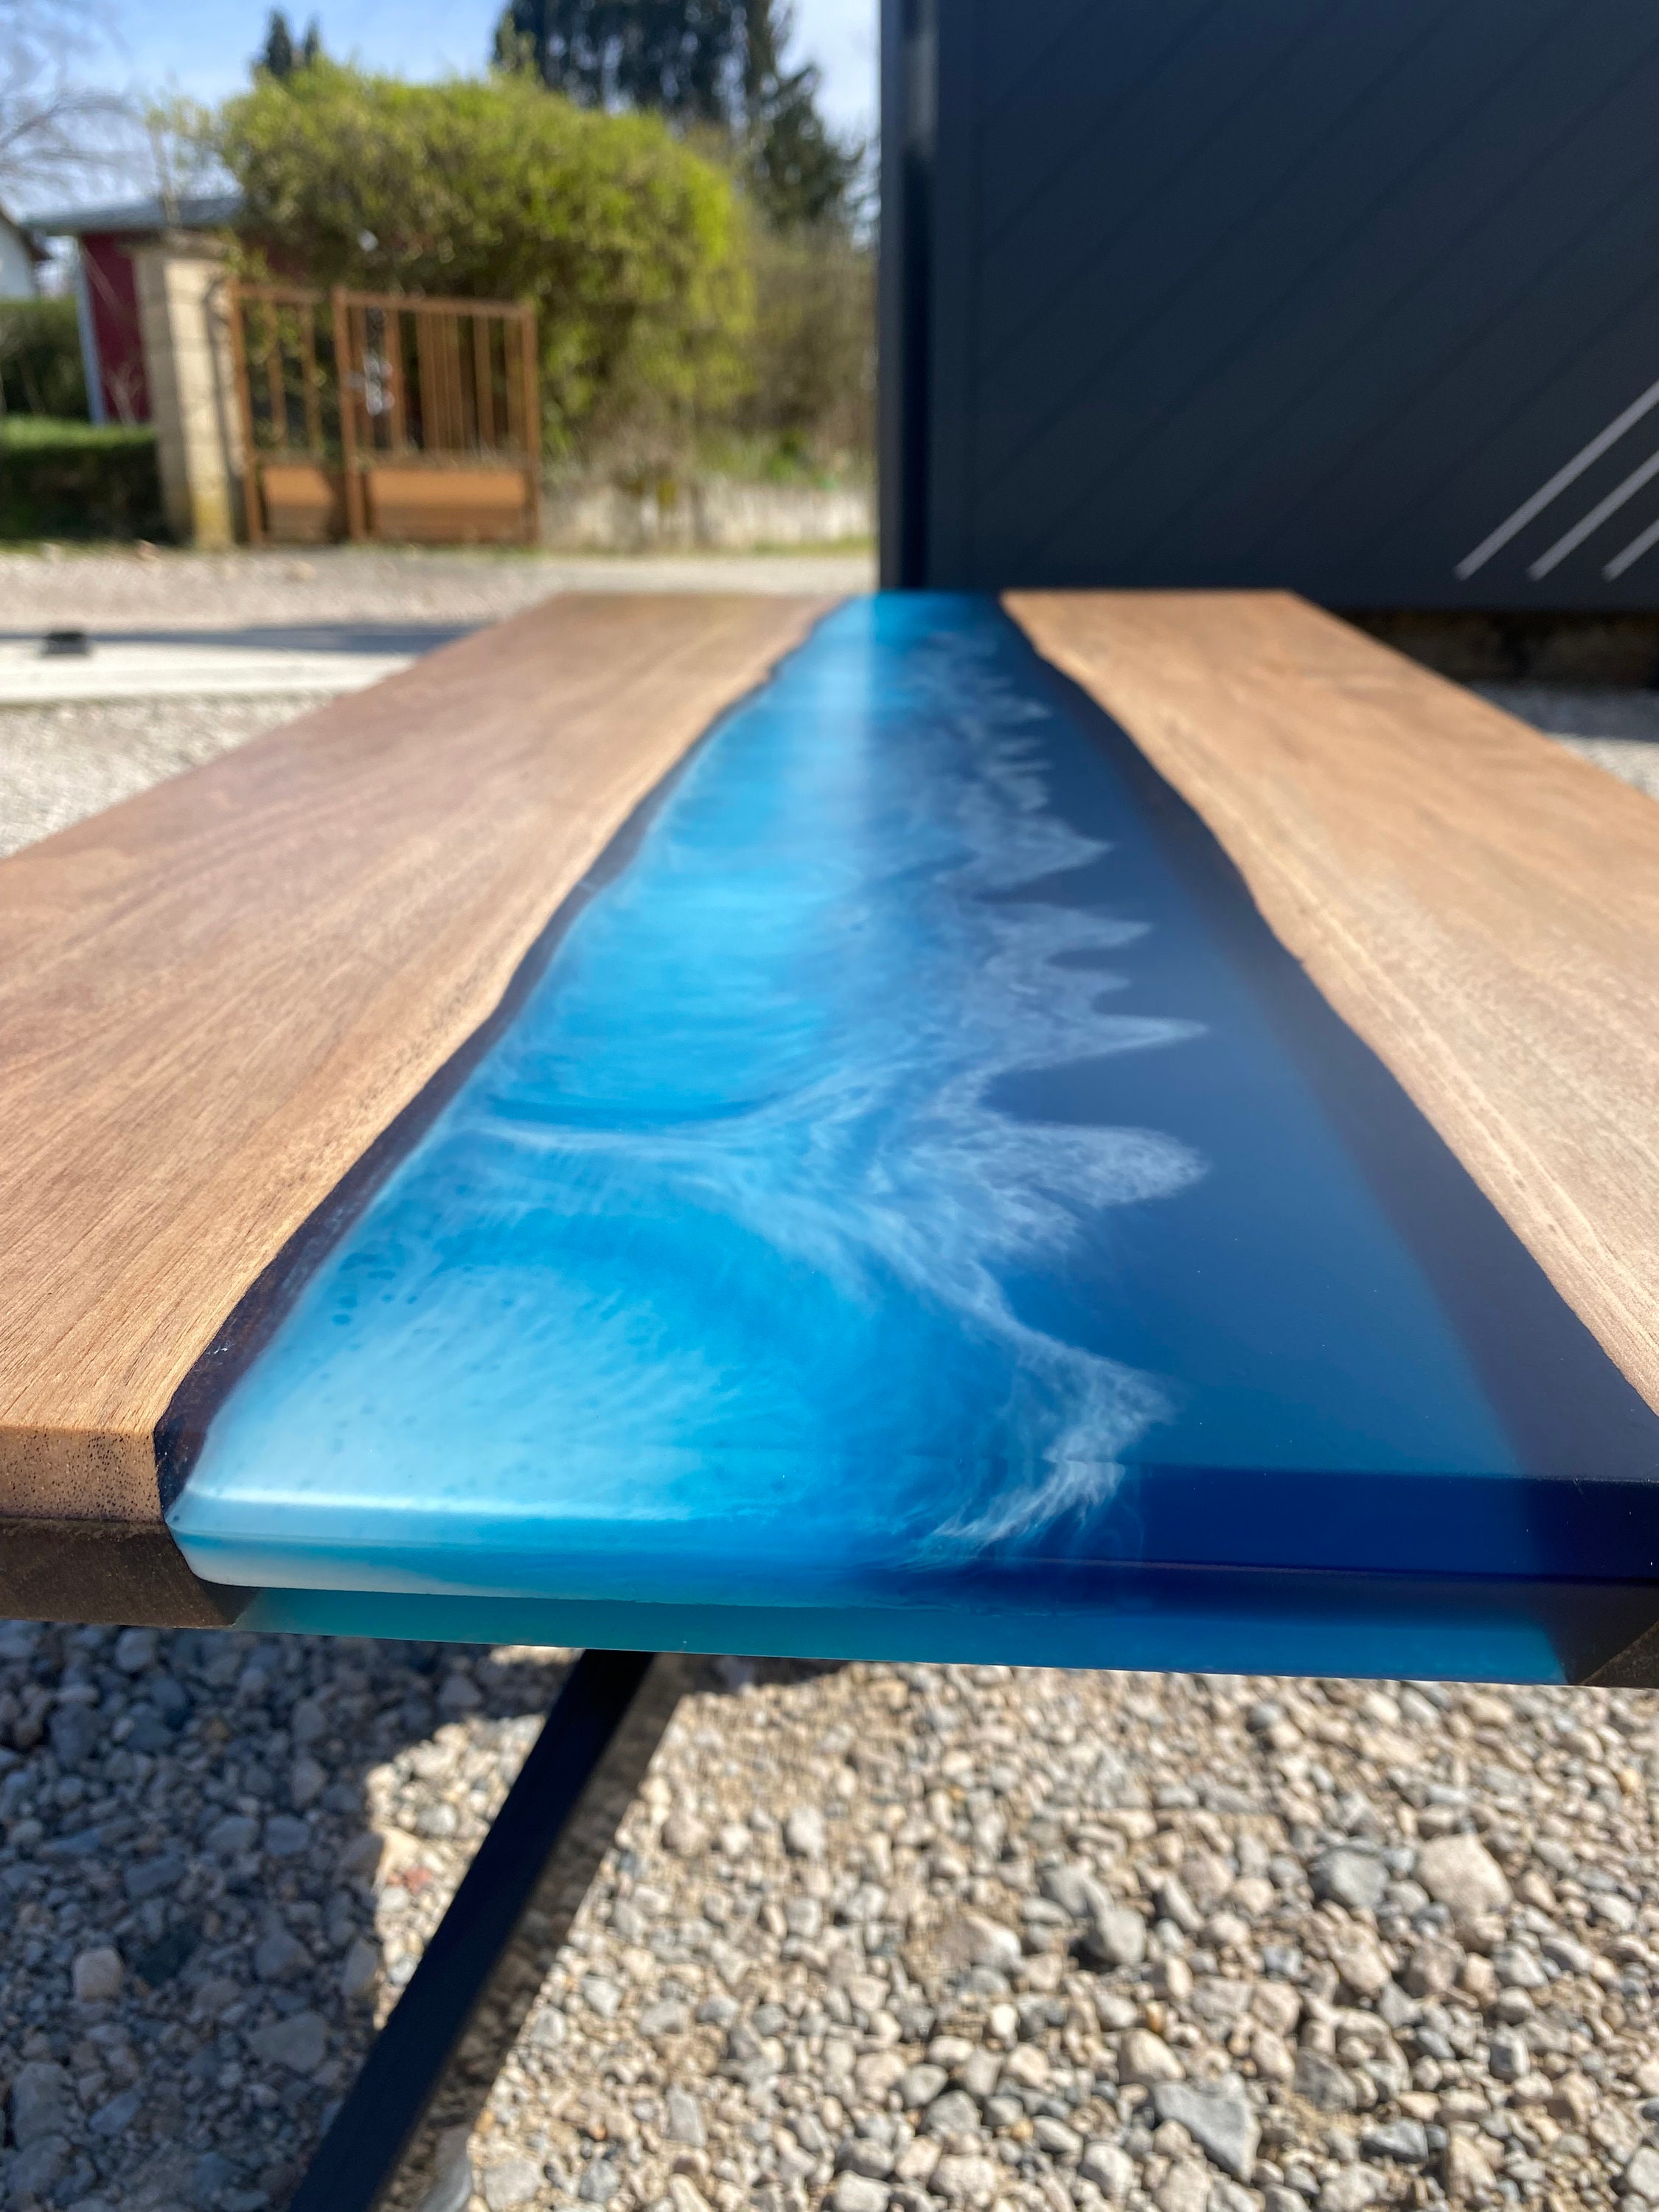 Fabrication d'une table basse en chêne et résine époxy bleue à Paris (75) -  EPOXYWOOD